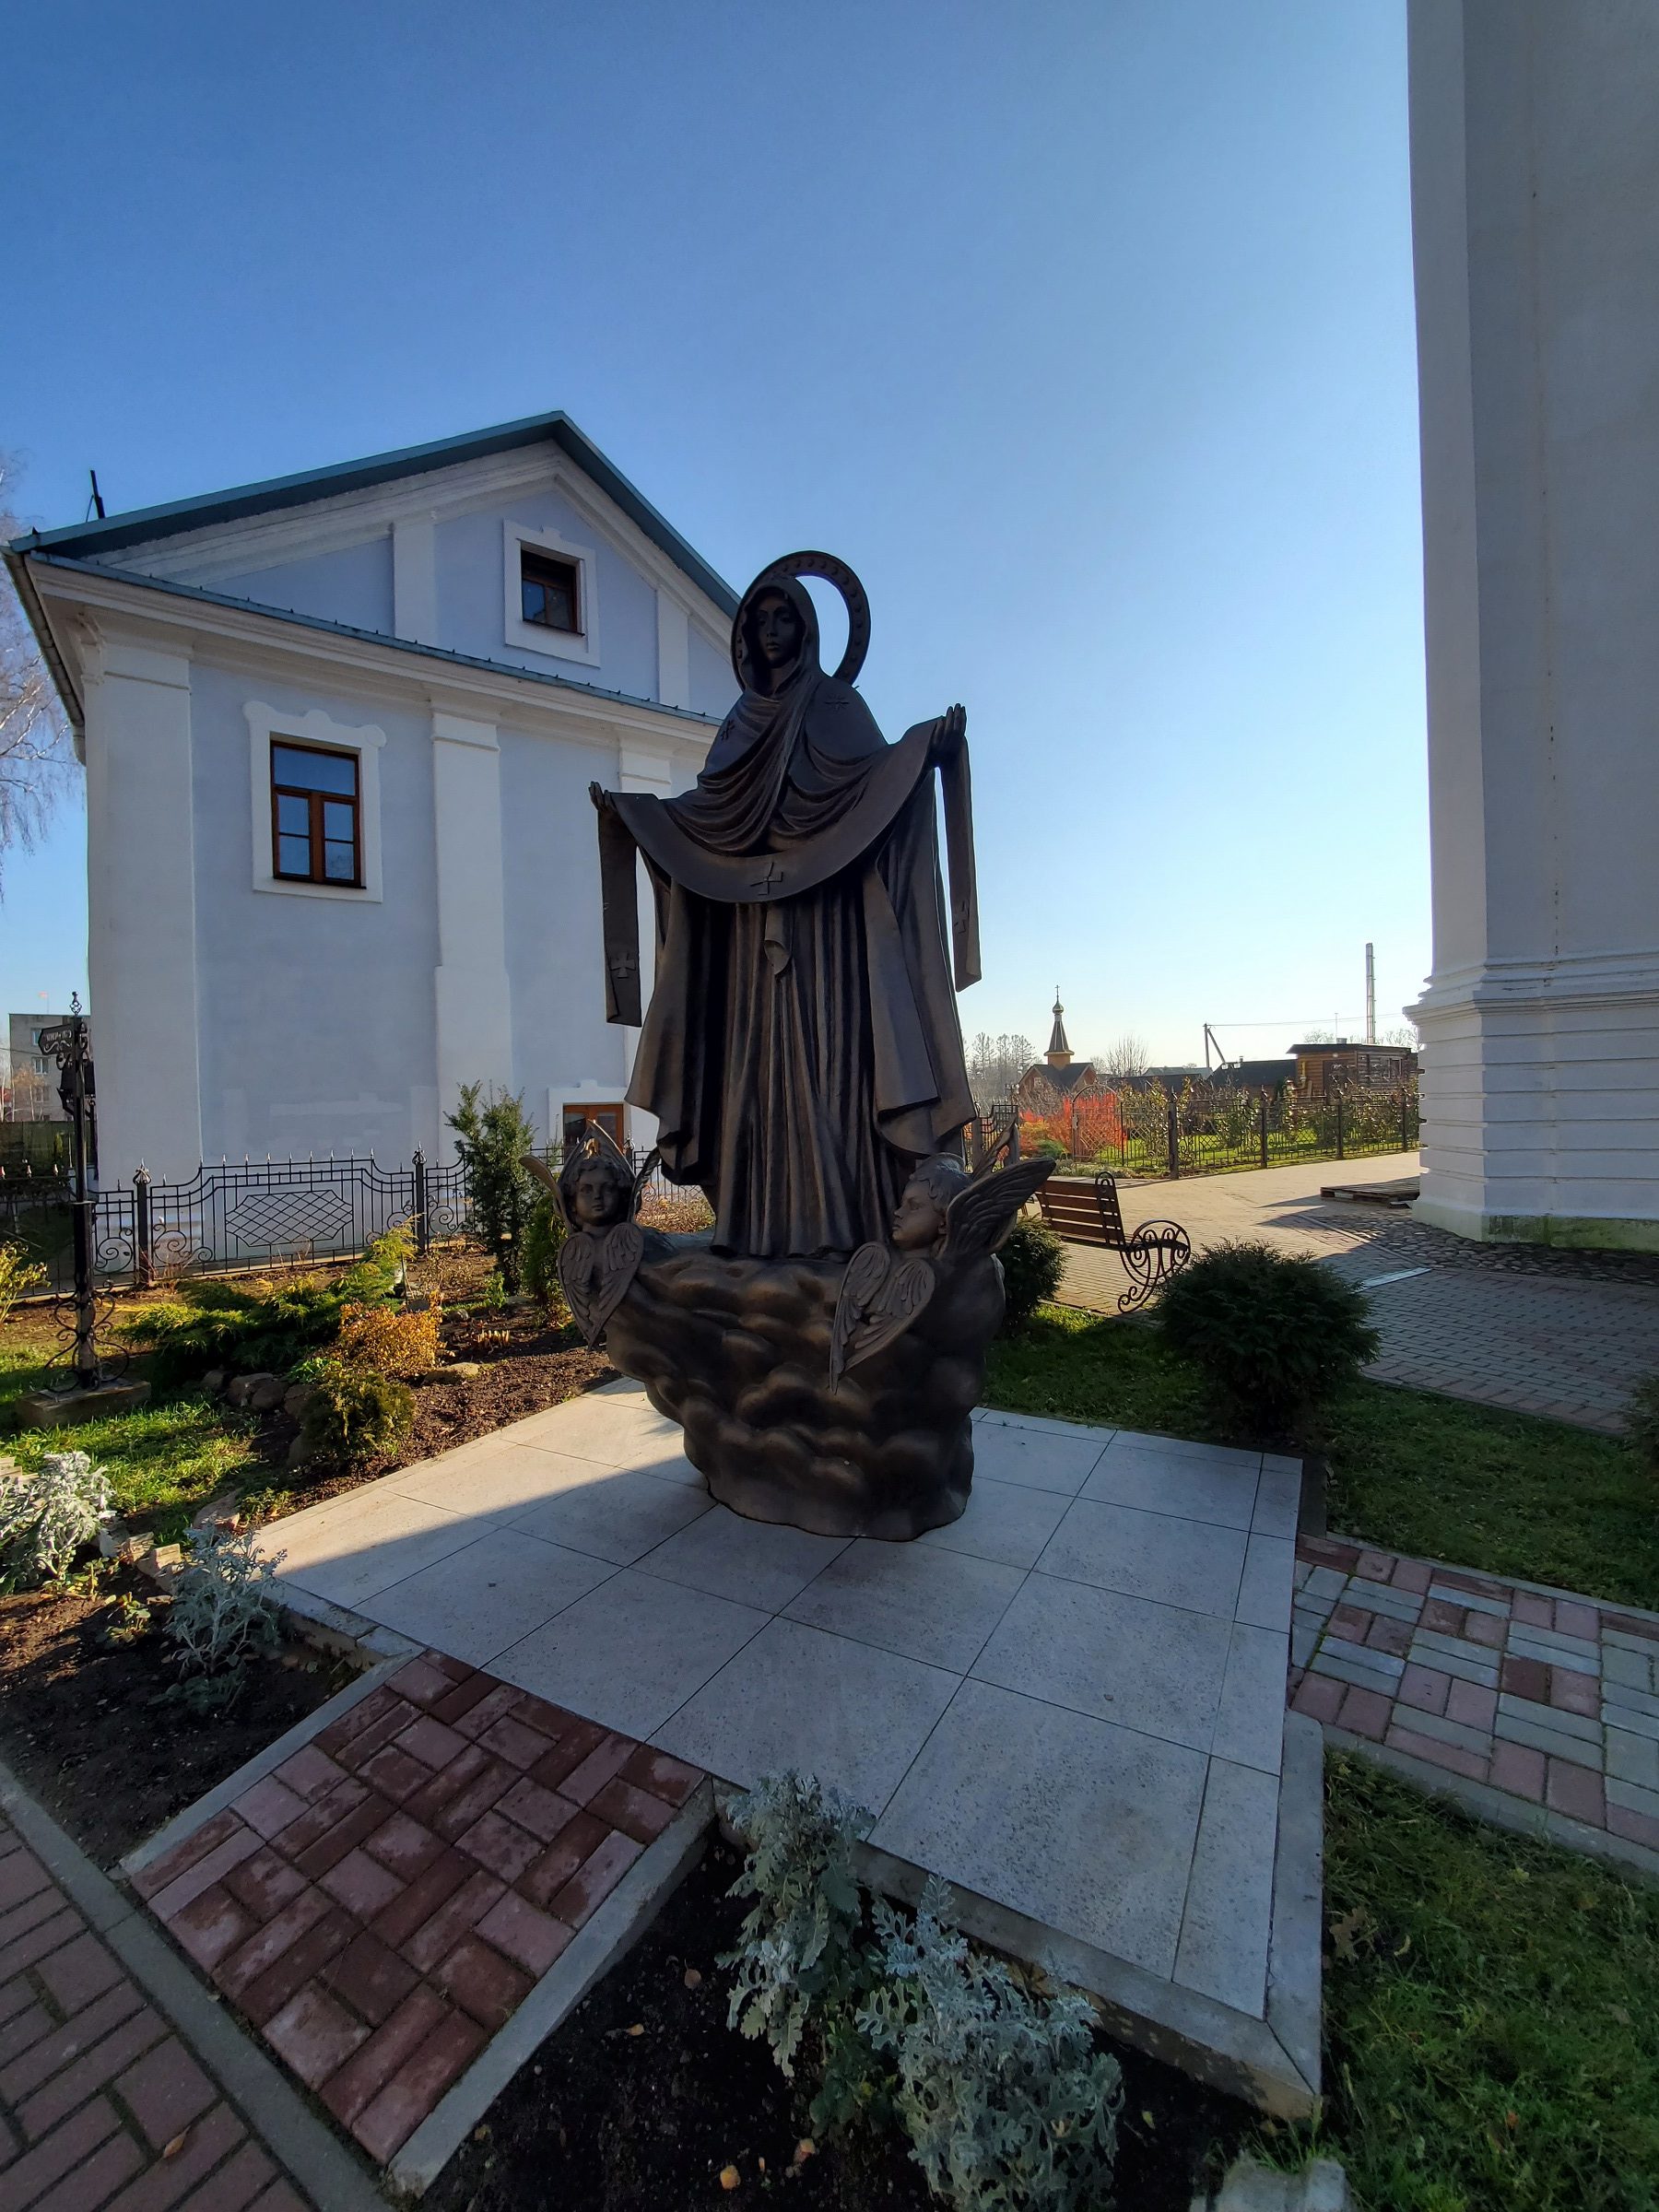 20211030 141109 rotated - Свято-Покровский монастырь в Толочине